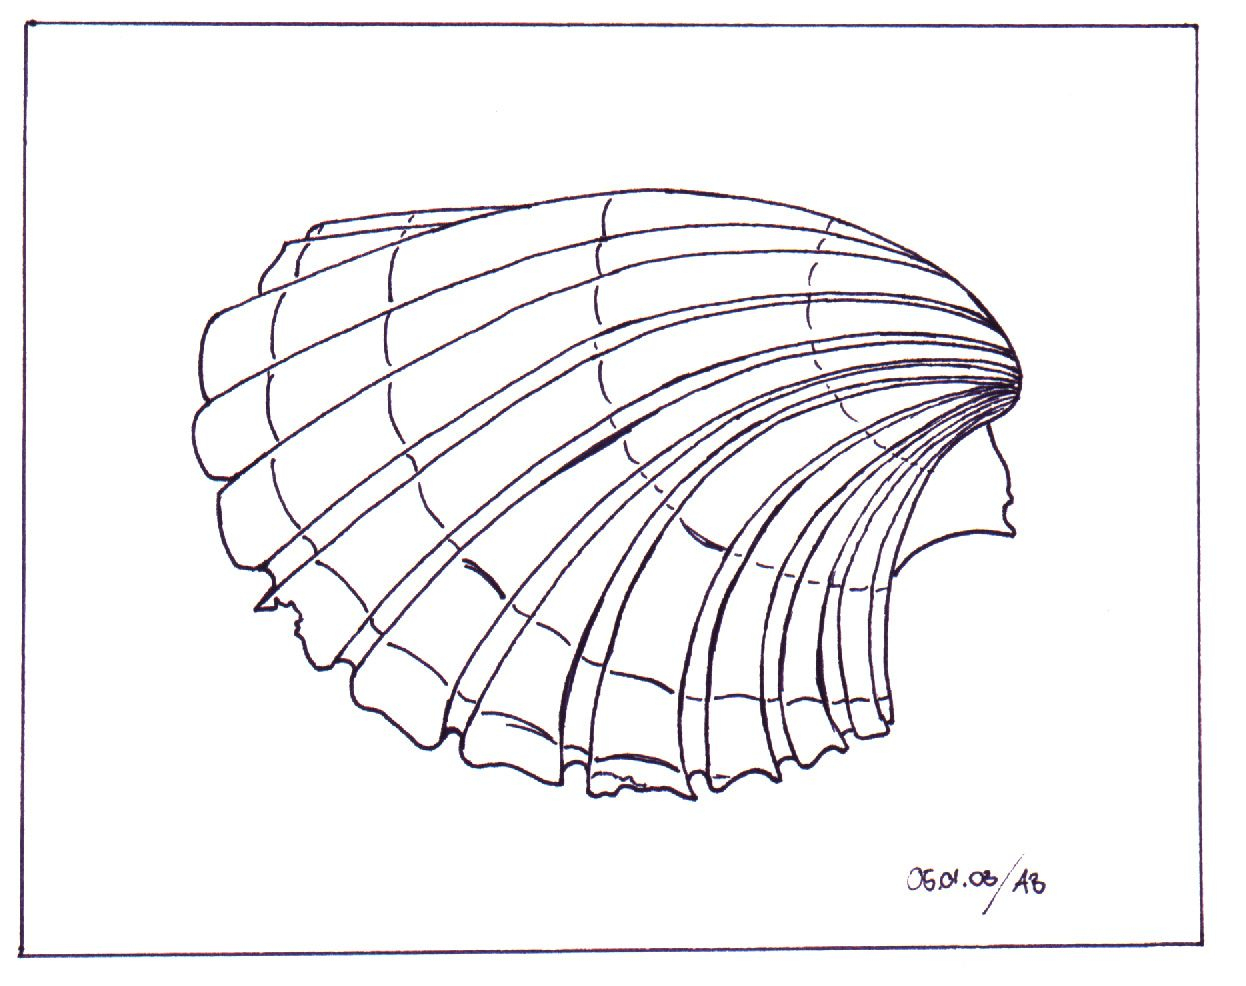 Muschel-Zeichnung | Muscheln Zeichnen, Zeichnungen, Zeichnen ganzes Muscheln Malen